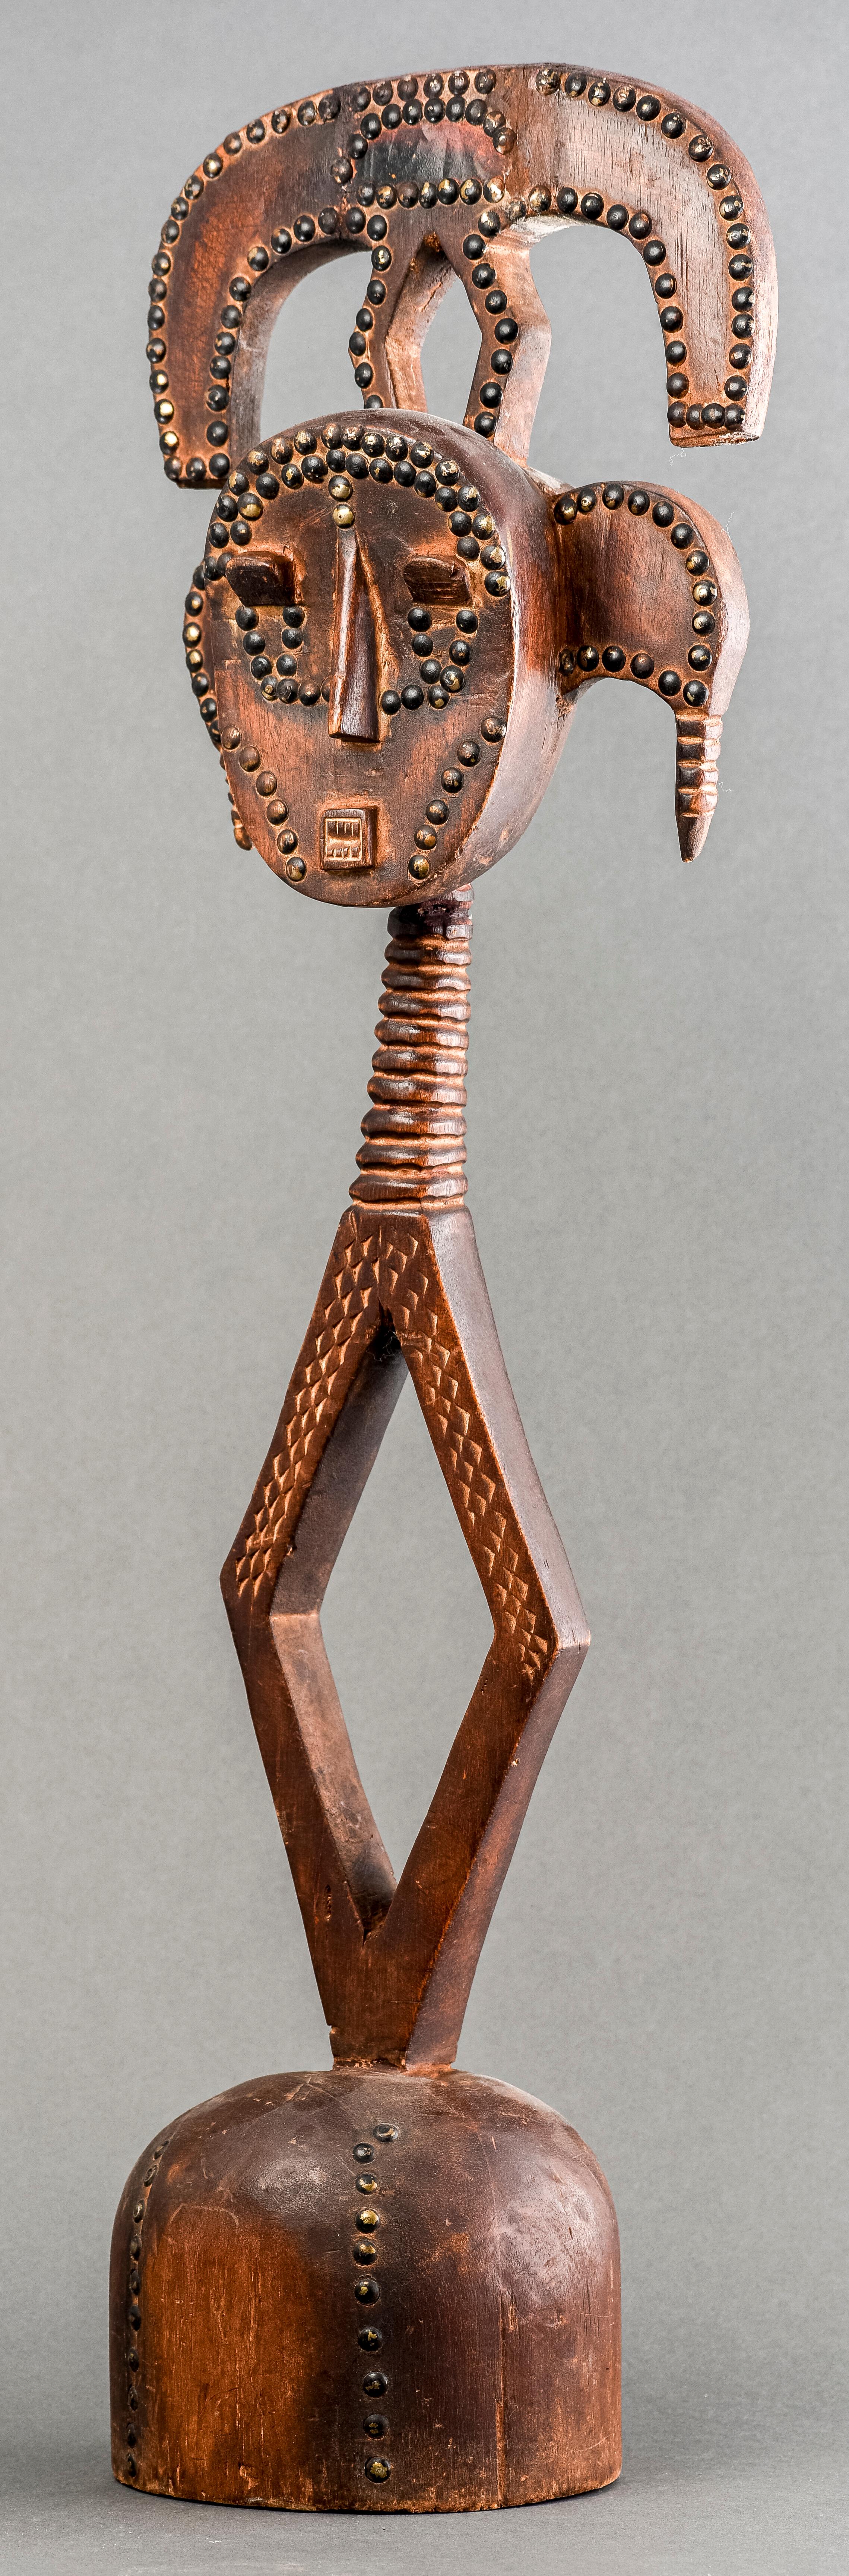 Peuple Kota, figurine reliquaire en bois, XXe siècle, Gabon / République du Congo, de forme géométrique avec des détails en métal en forme de tête de clou.

Dimensions : 33